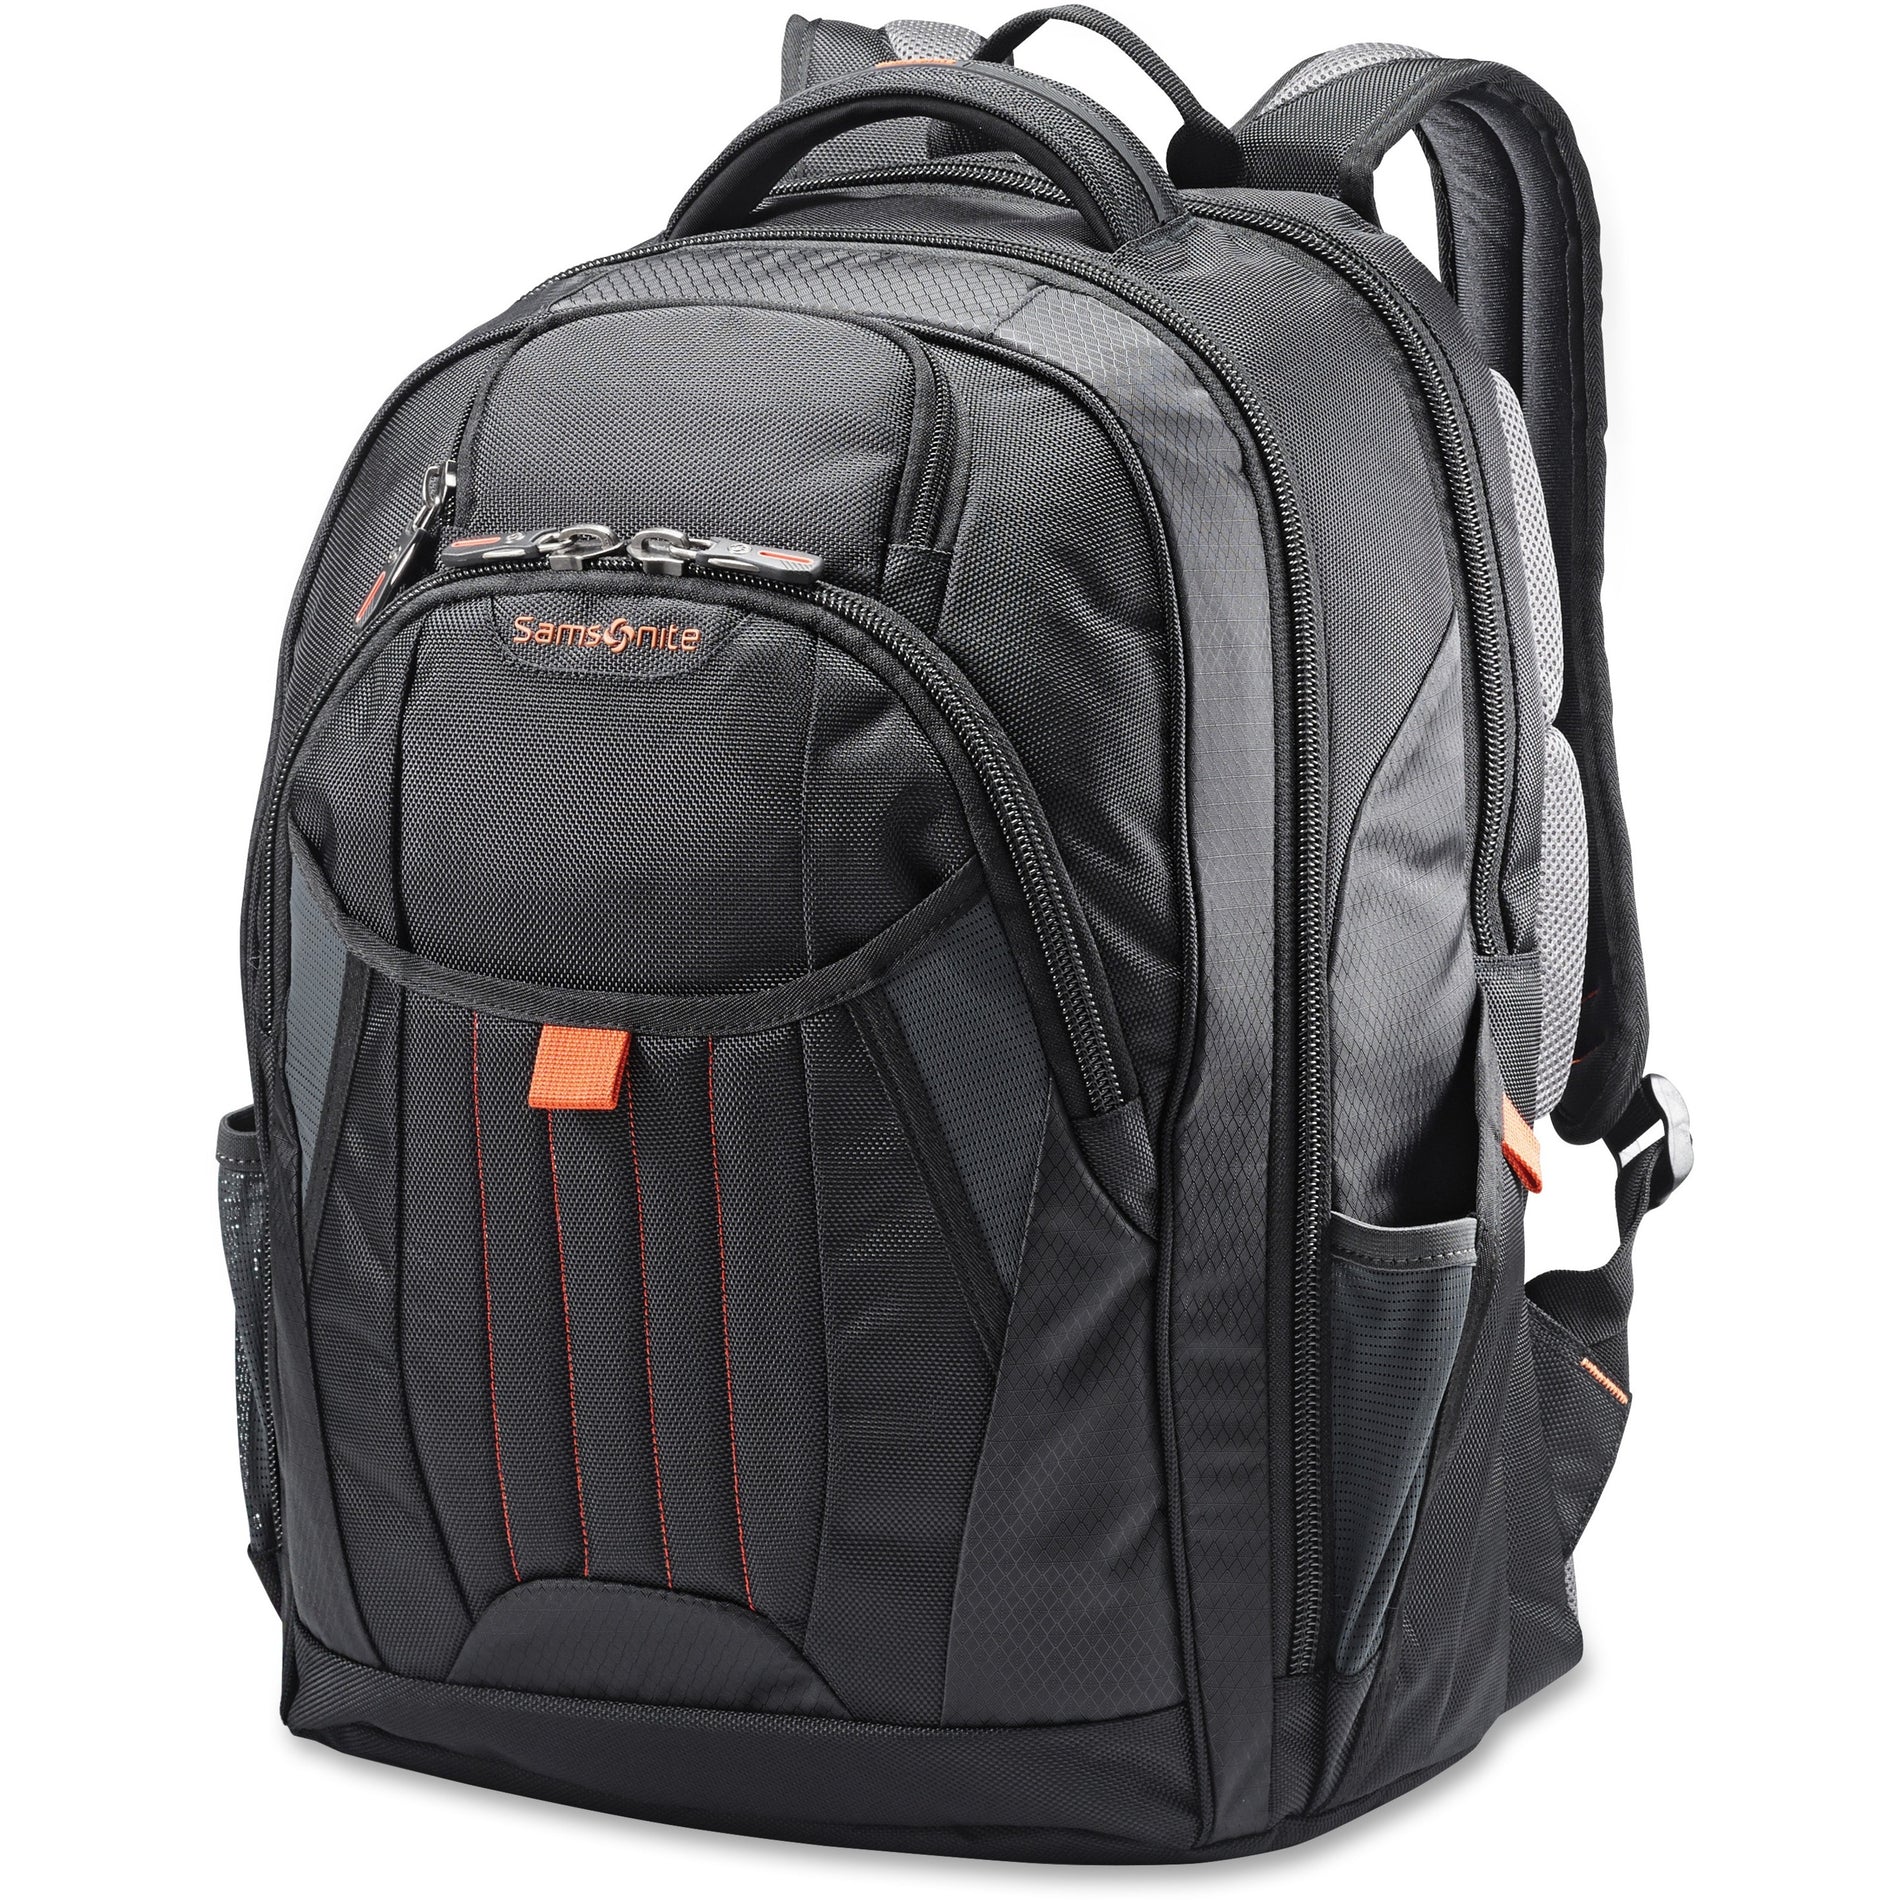 Samsonite 66303-1070 Tectonic 2 Large Backpack, 8-1/2"x13-1/2", Black - Padded Laptop Compartment, Tablet Pocket, Bottle Pocket